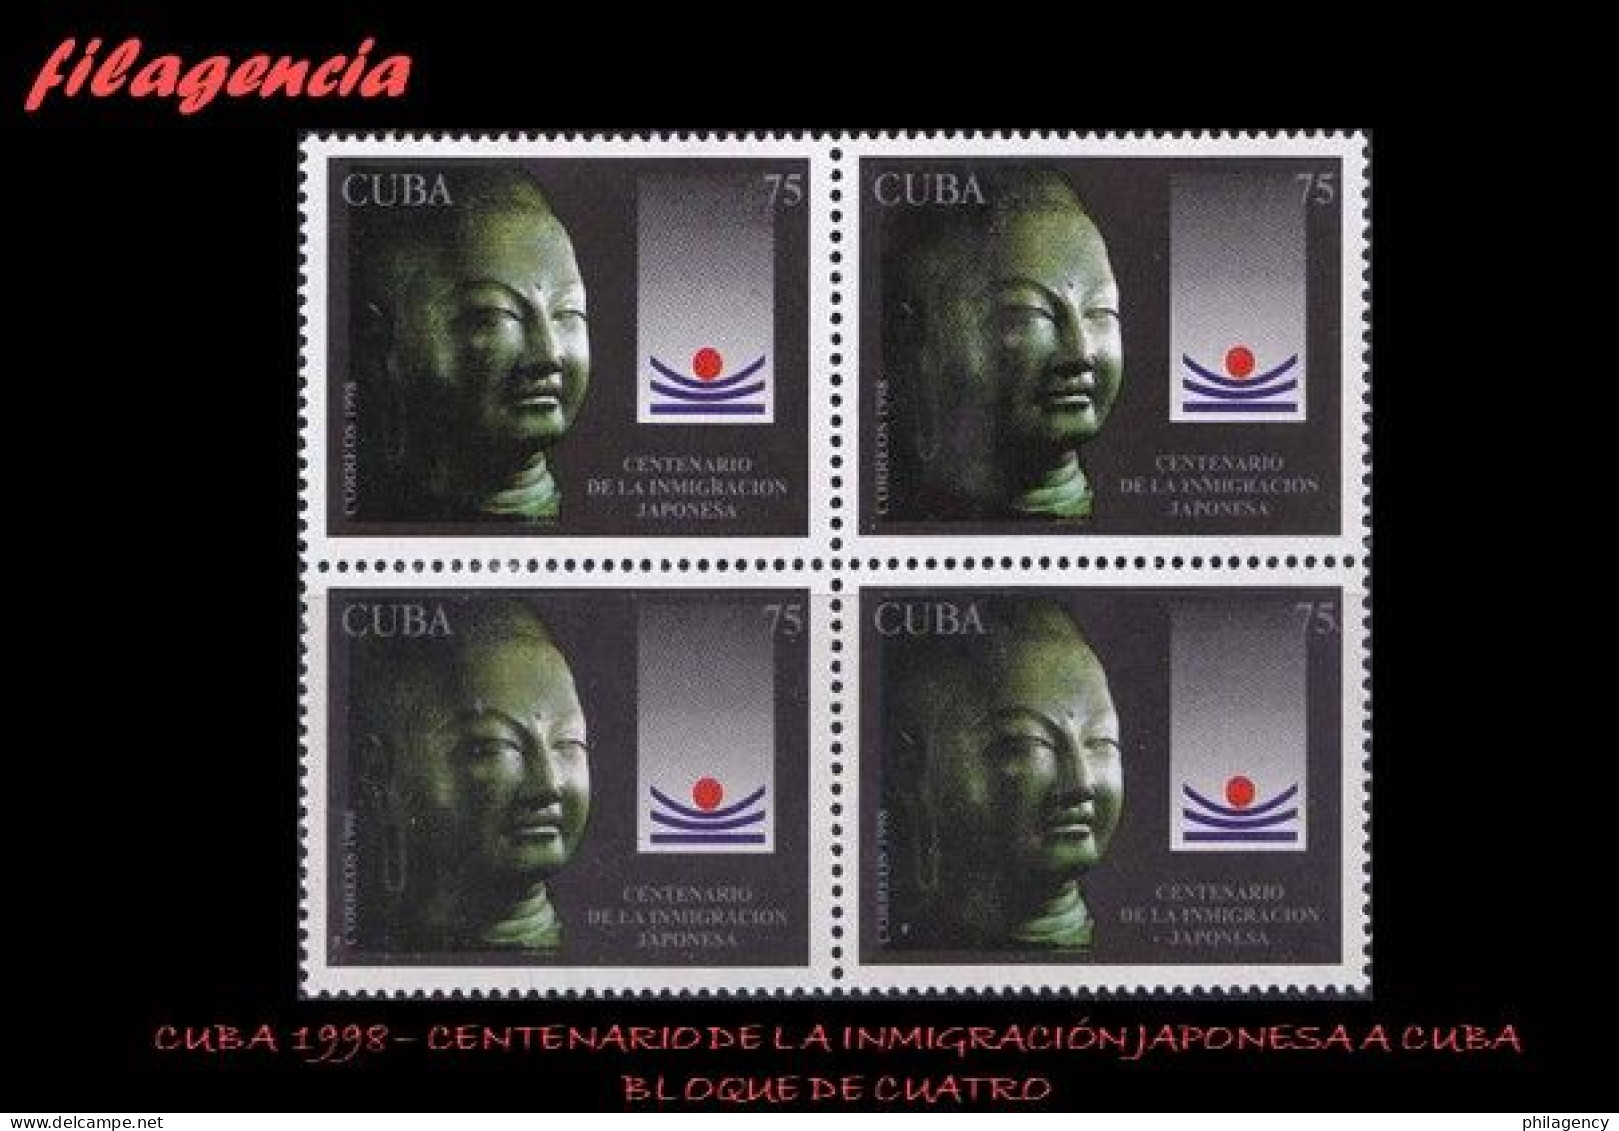 CUBA. BLOQUES DE CUATRO. 1998-22 CENTENARIO DE LA INMIGRACIÓN JAPONESA EN CUBA - Unused Stamps